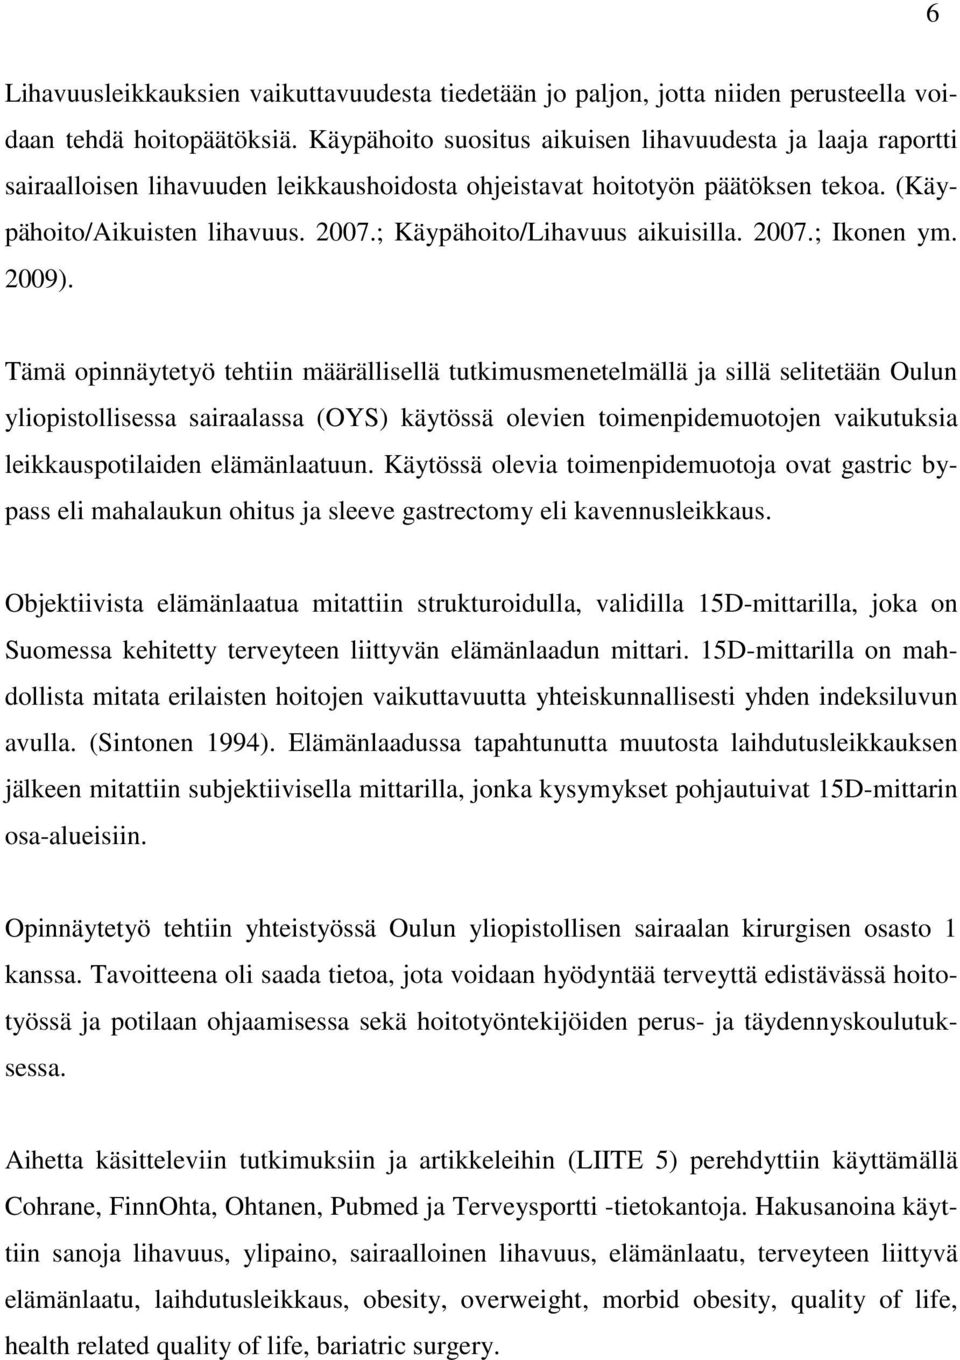 ; Käypähoito/Lihavuus aikuisilla. 2007.; Ikonen ym. 2009).